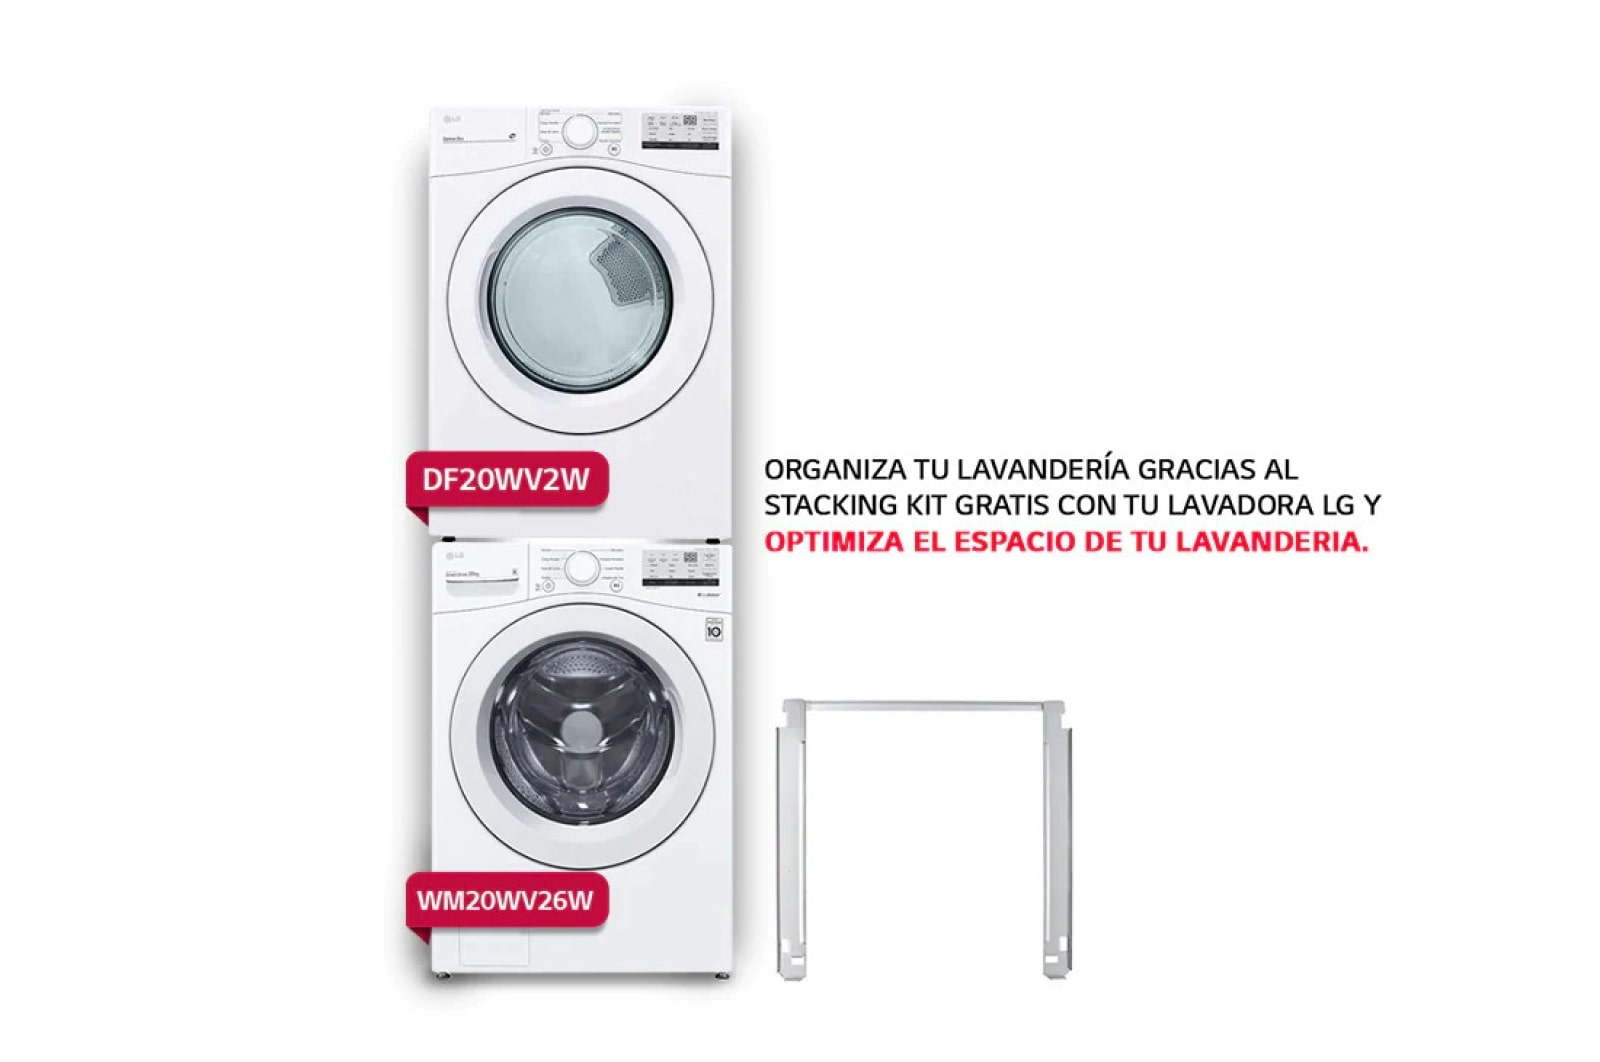 LG ''Paquete de Lavadora + Secadora a gas de 20 Kg con Stacking Kit gratis Lava Más Rápido con el Combo Lavadora y Secadora color Blanco'', WM20W-DF20W